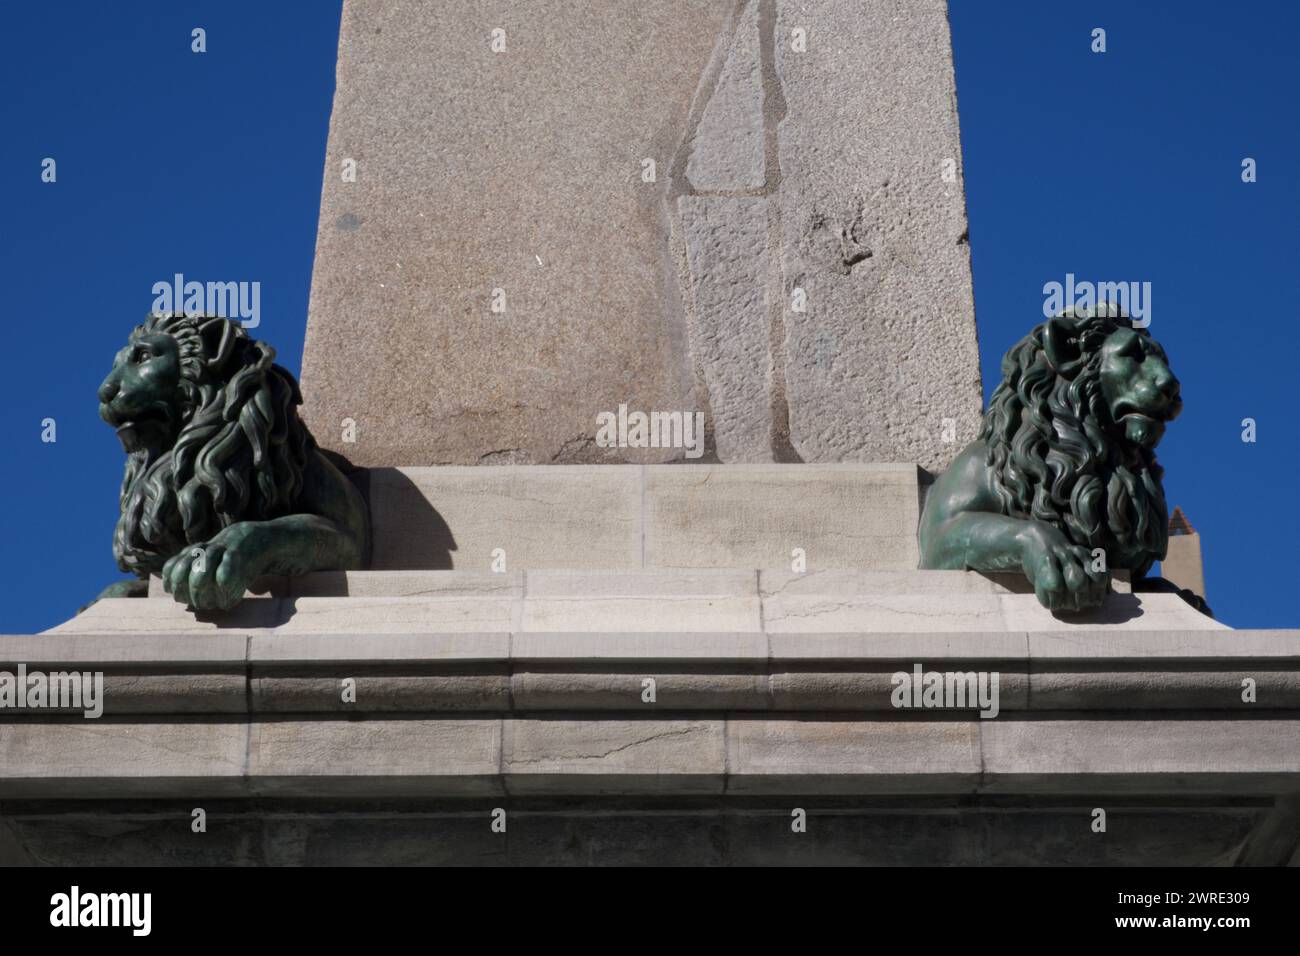 Lion sculptures on the obelisk, Place de la République Arles France Stock Photo